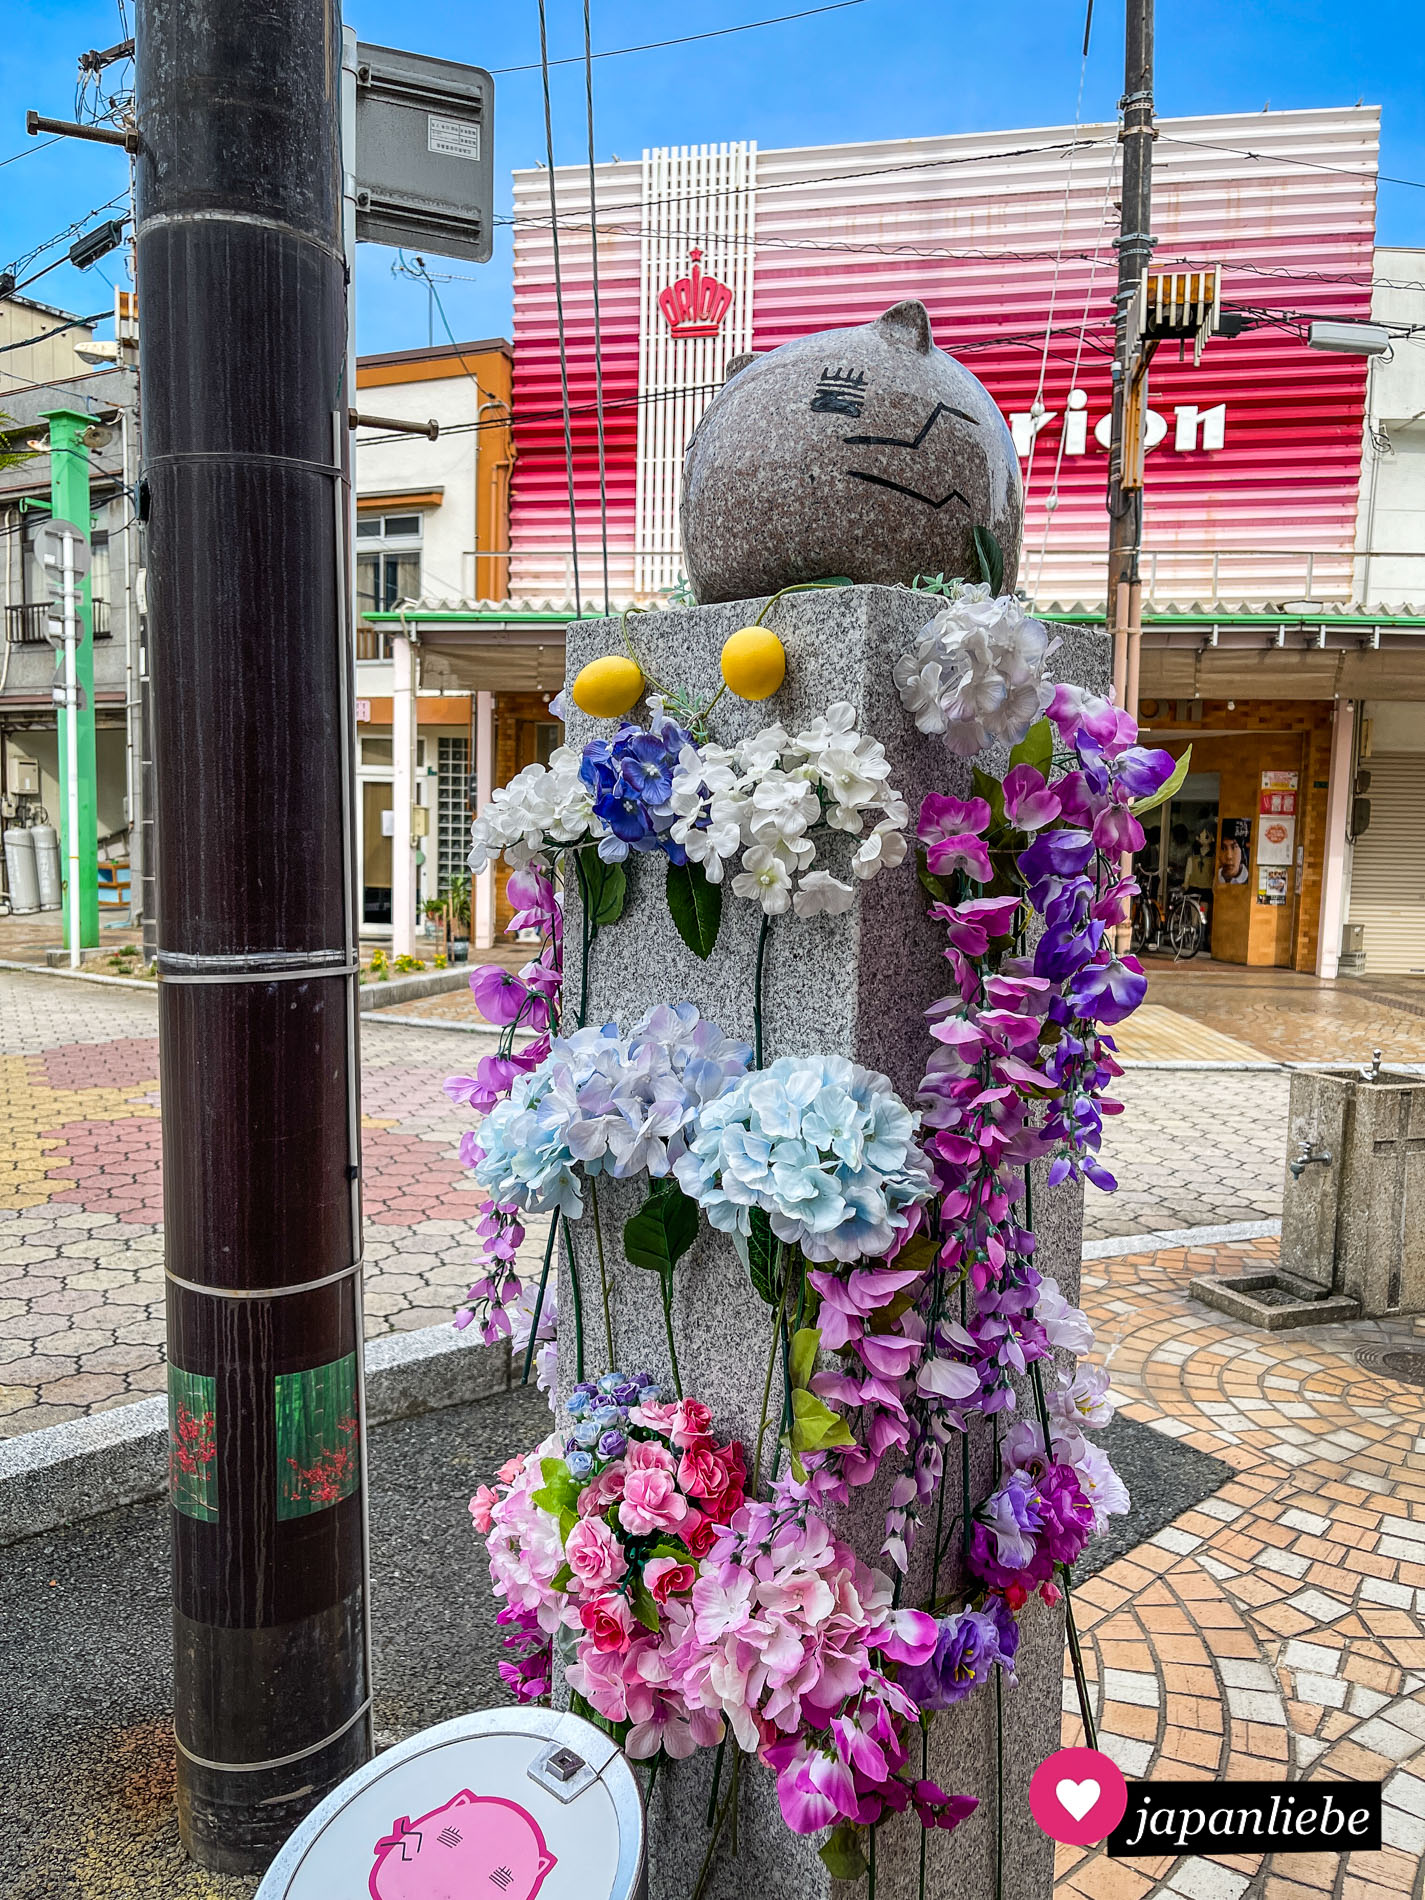 Momoneko, das Maskottchen der Serie "Tamayura“, wird in Takehara bis heute von Fans verehrt.